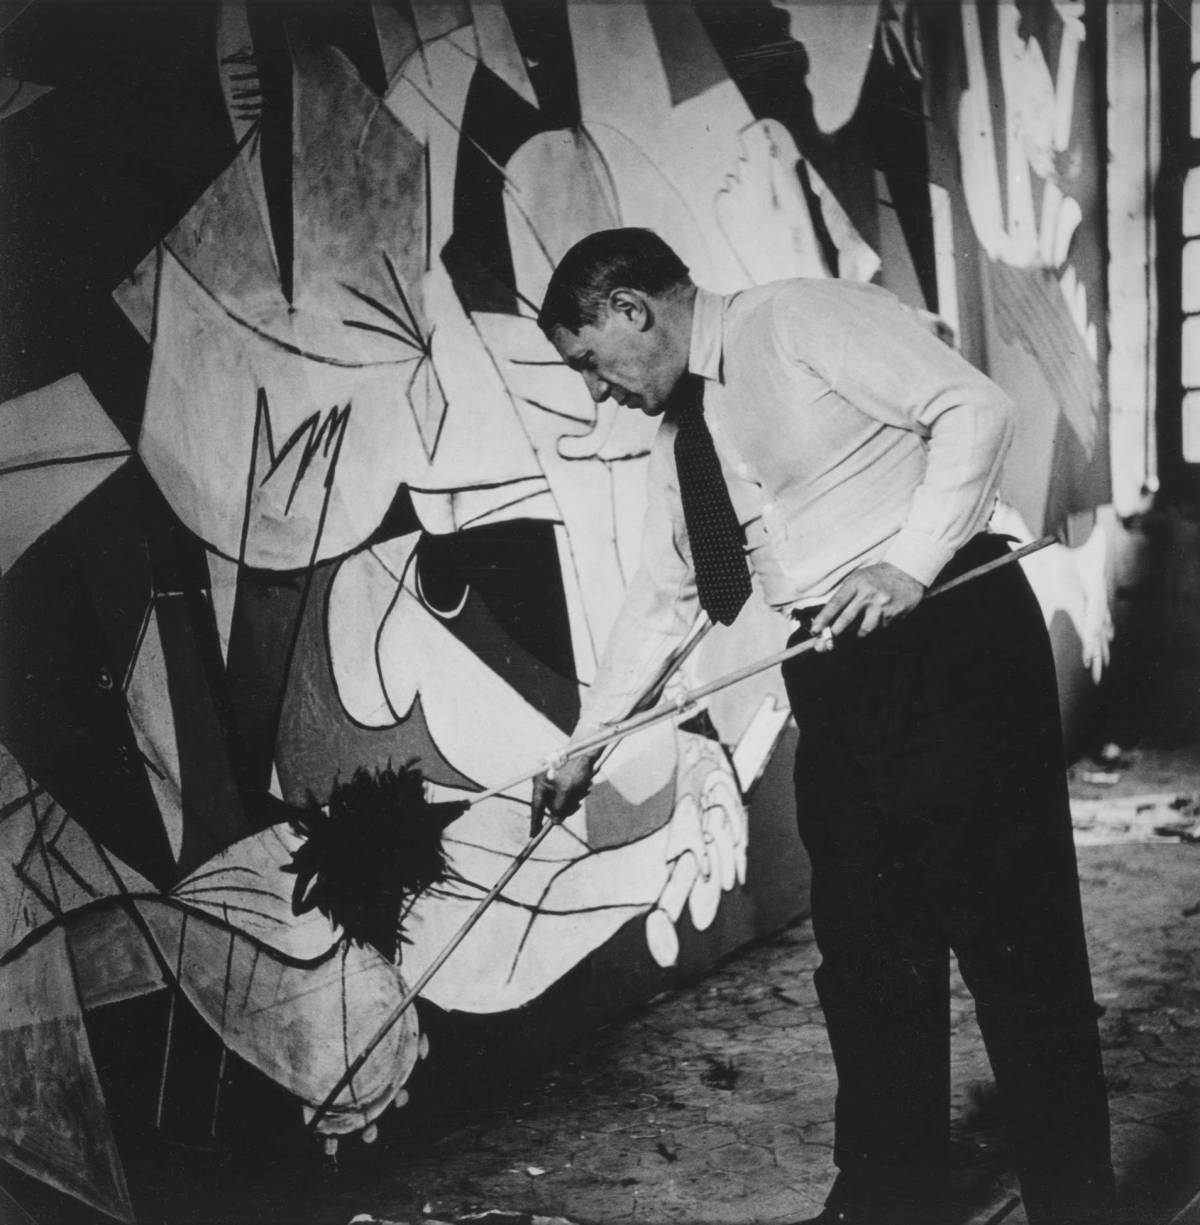 Oggi sono 50 anni dalla morte di Picasso: 10 curiosità sul maestro spagnolo